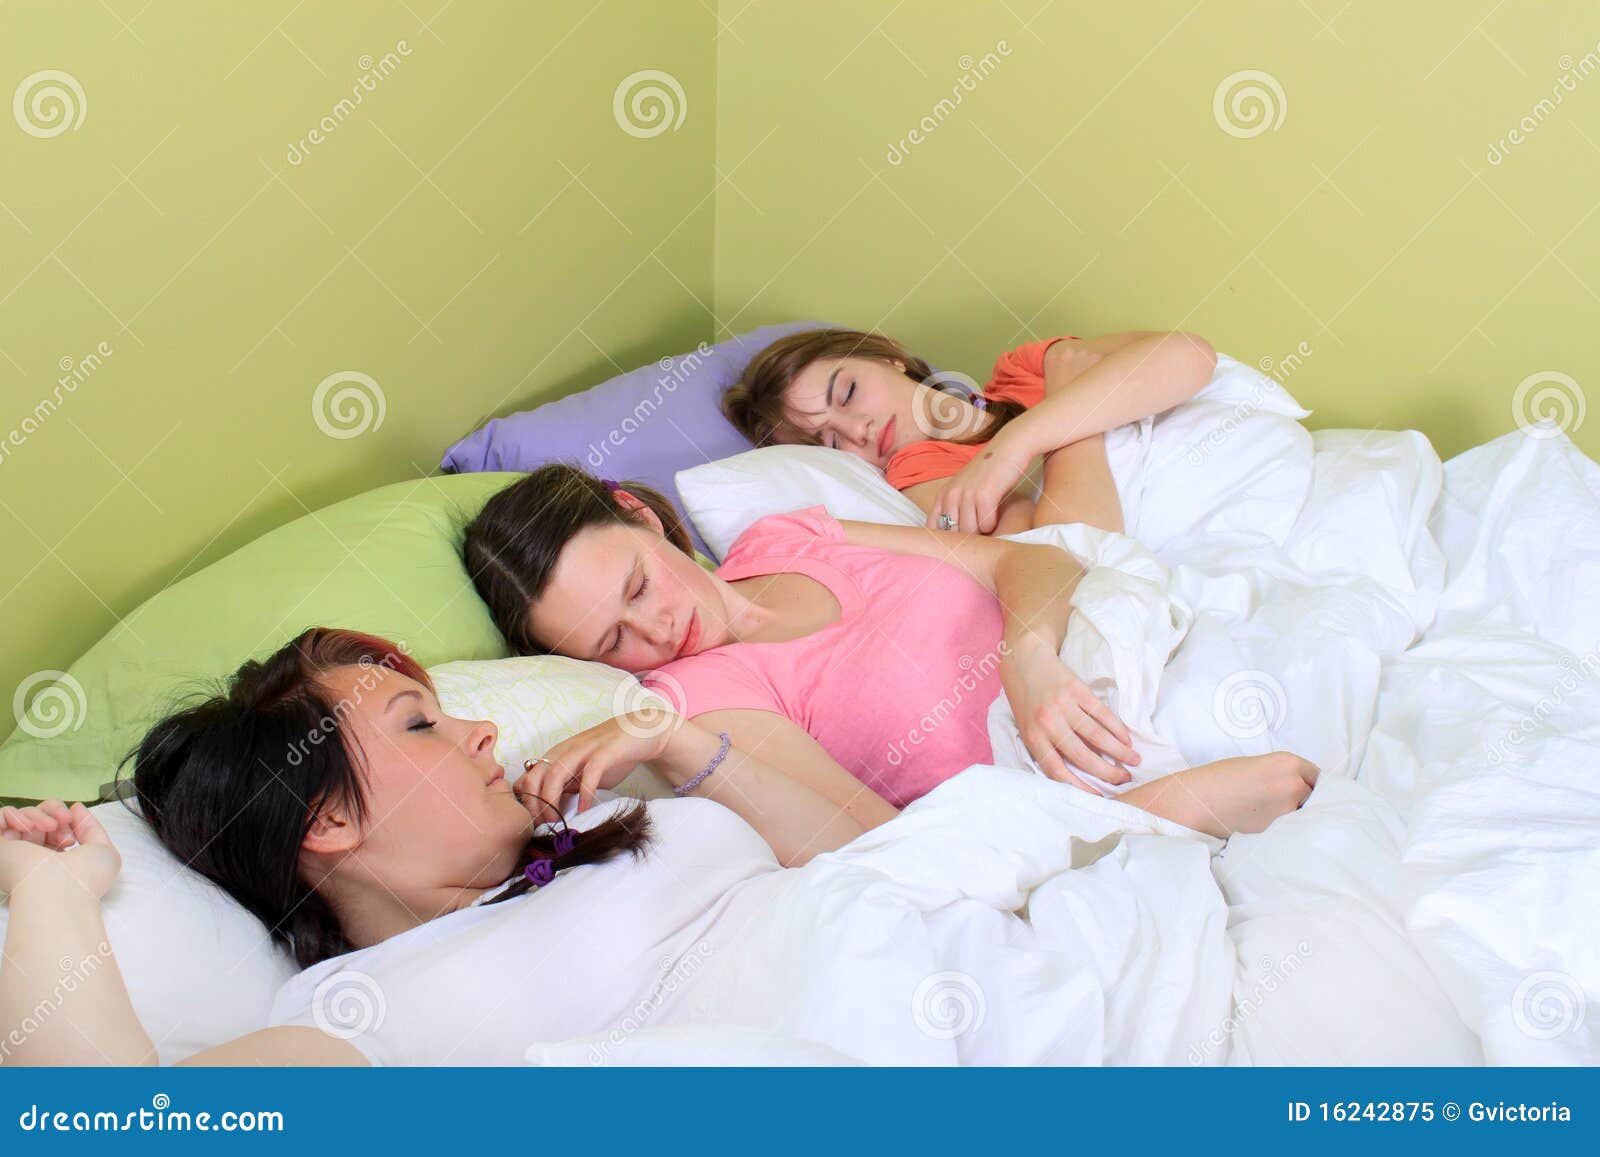 Папа лижет спящей. Две девушки в кровати. Спящие подруги. Девушки спать два.